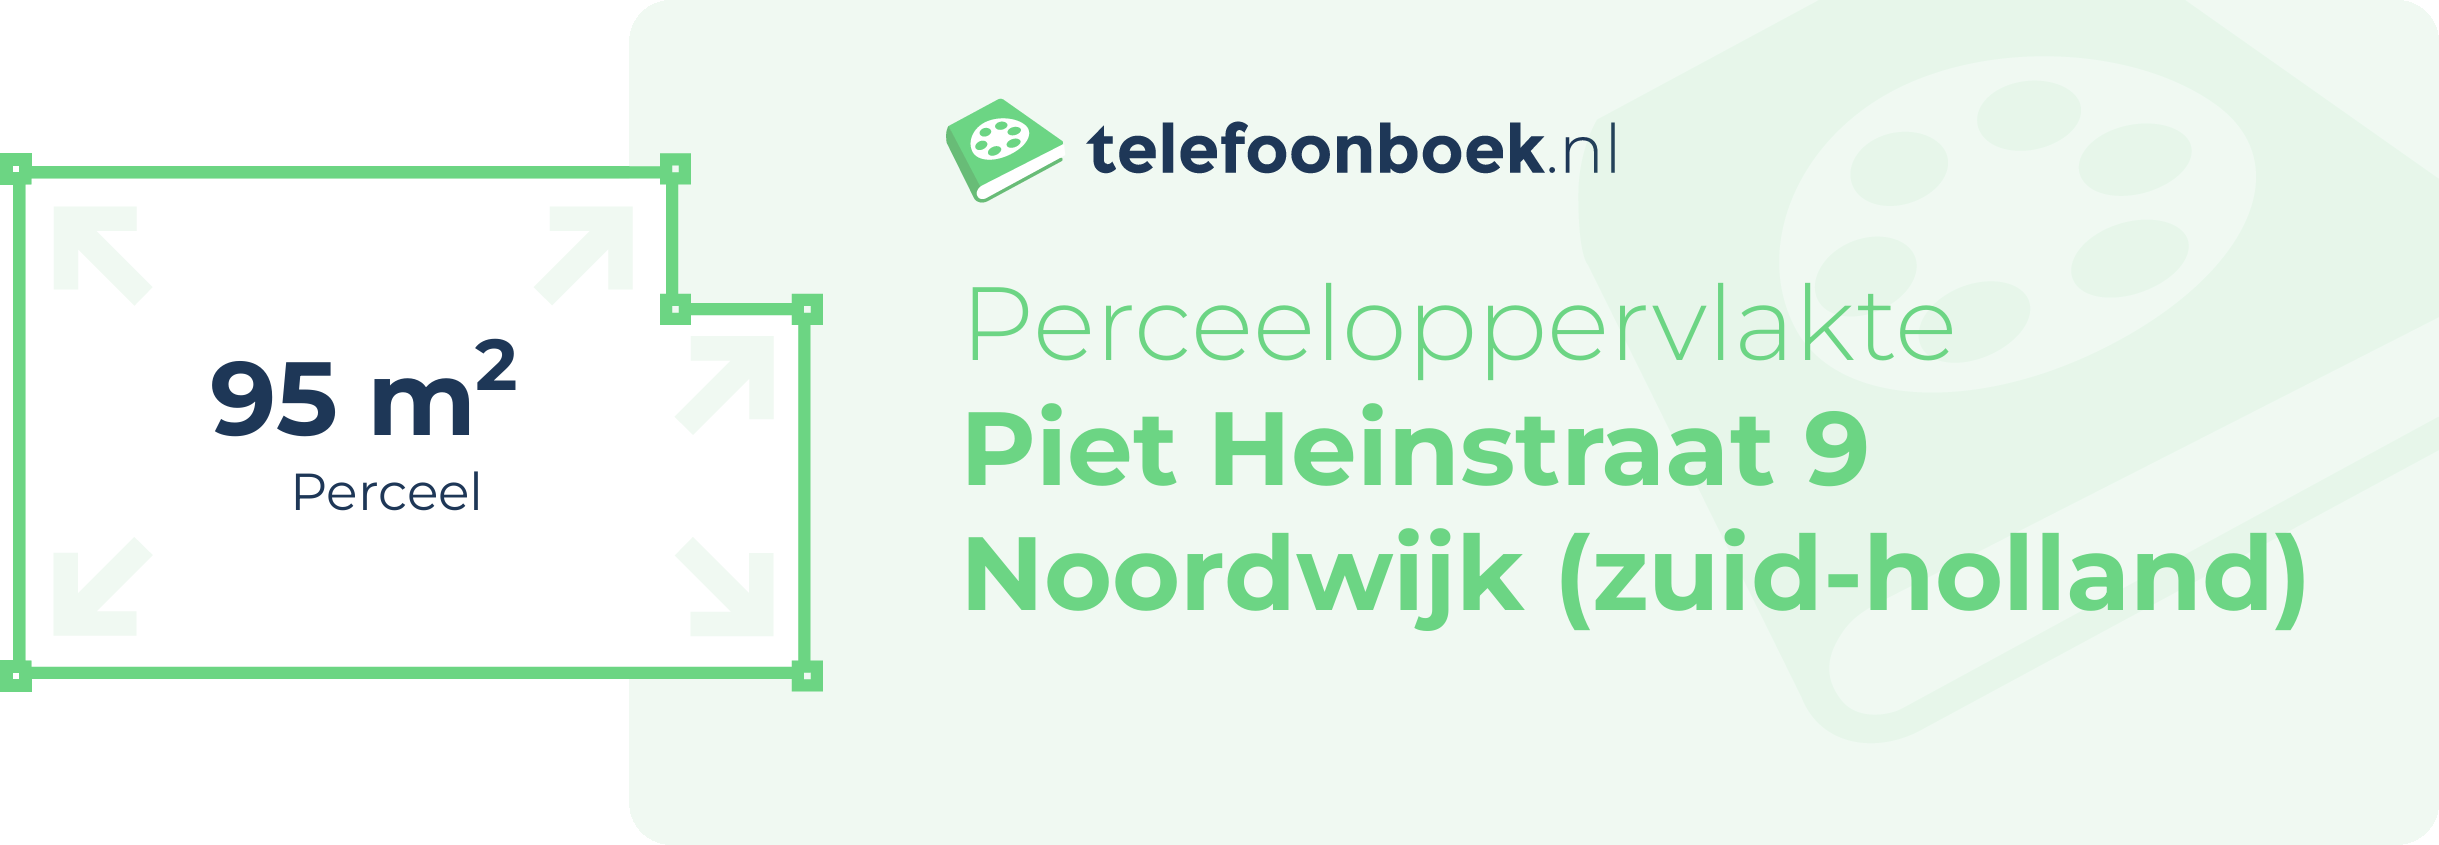 Perceeloppervlakte Piet Heinstraat 9 Noordwijk (Zuid-Holland)